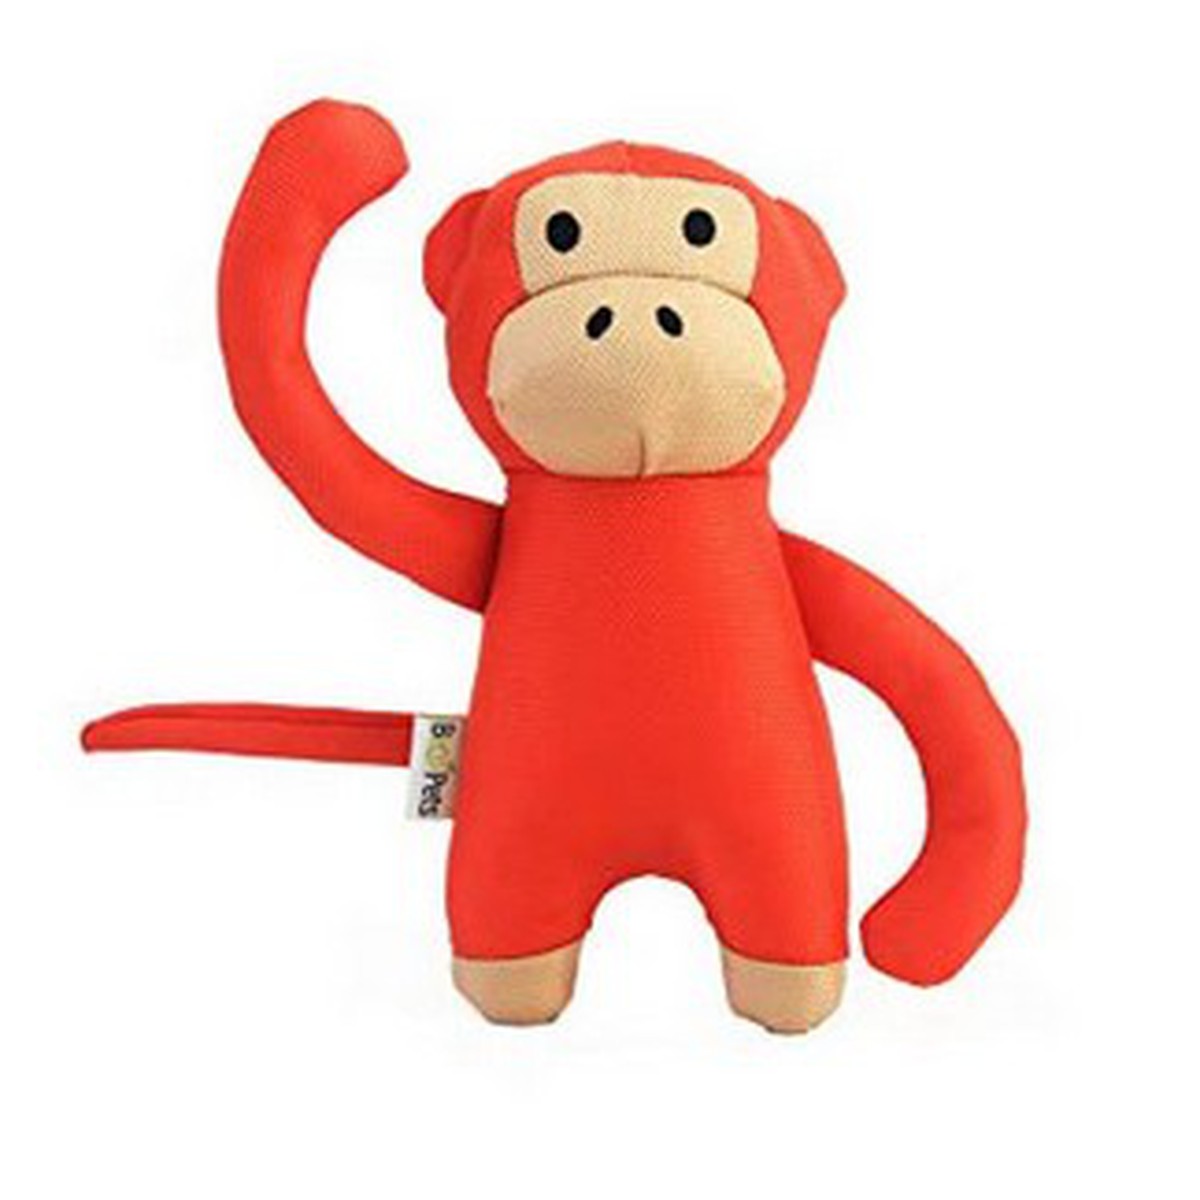   Beco Soft Toy - Monkey - Medium  Medium